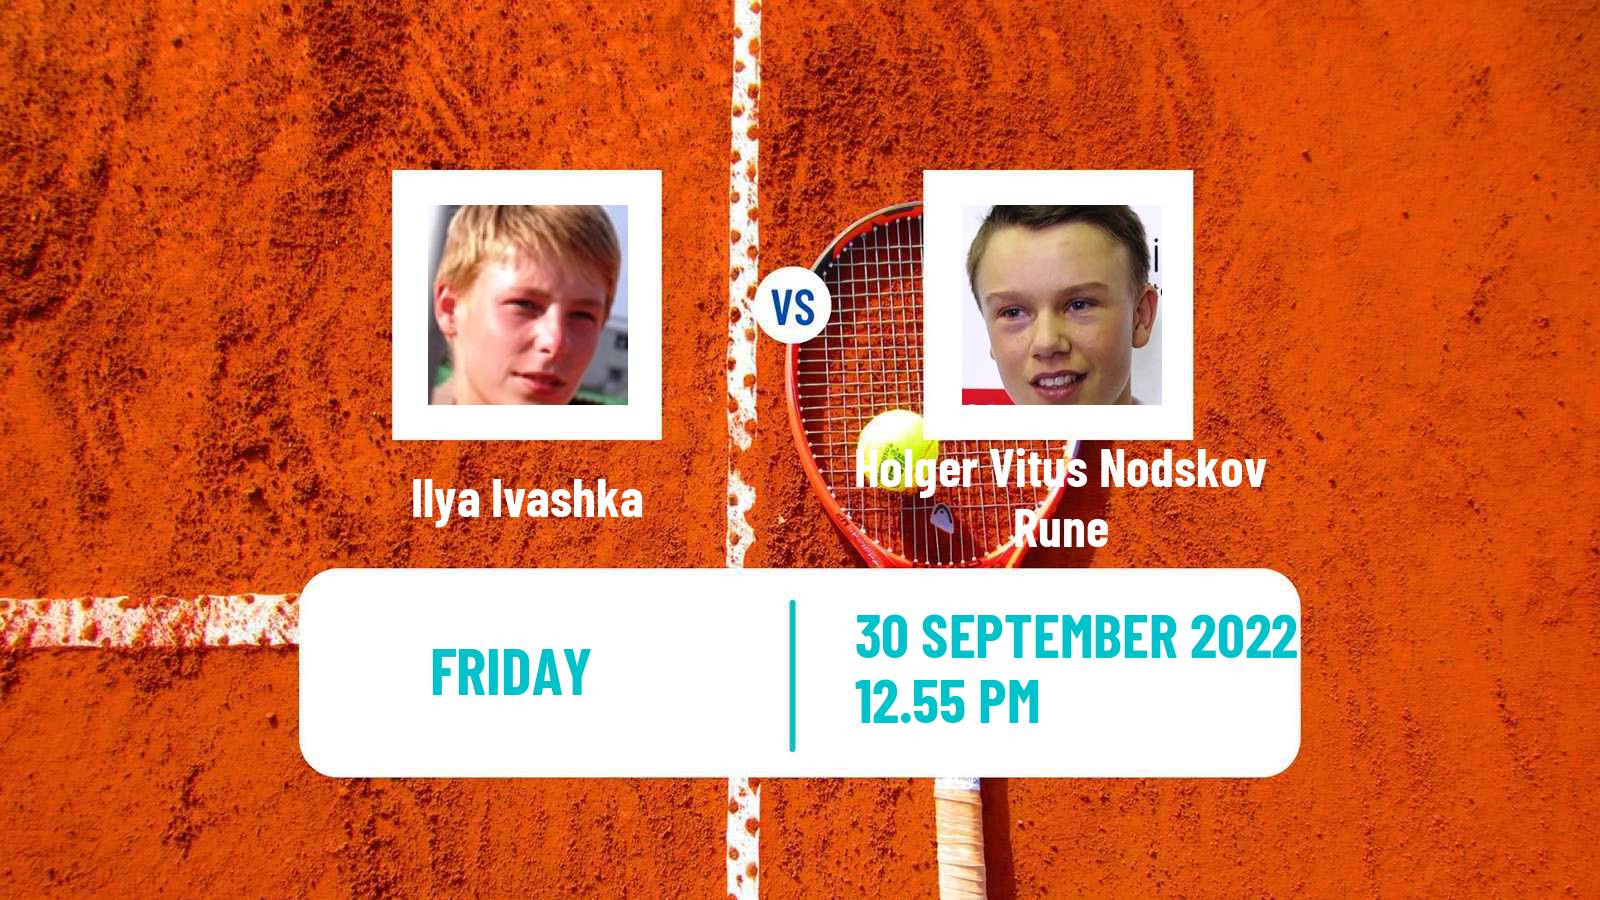 Tennis ATP Sofia Ilya Ivashka - Holger Vitus Nodskov Rune